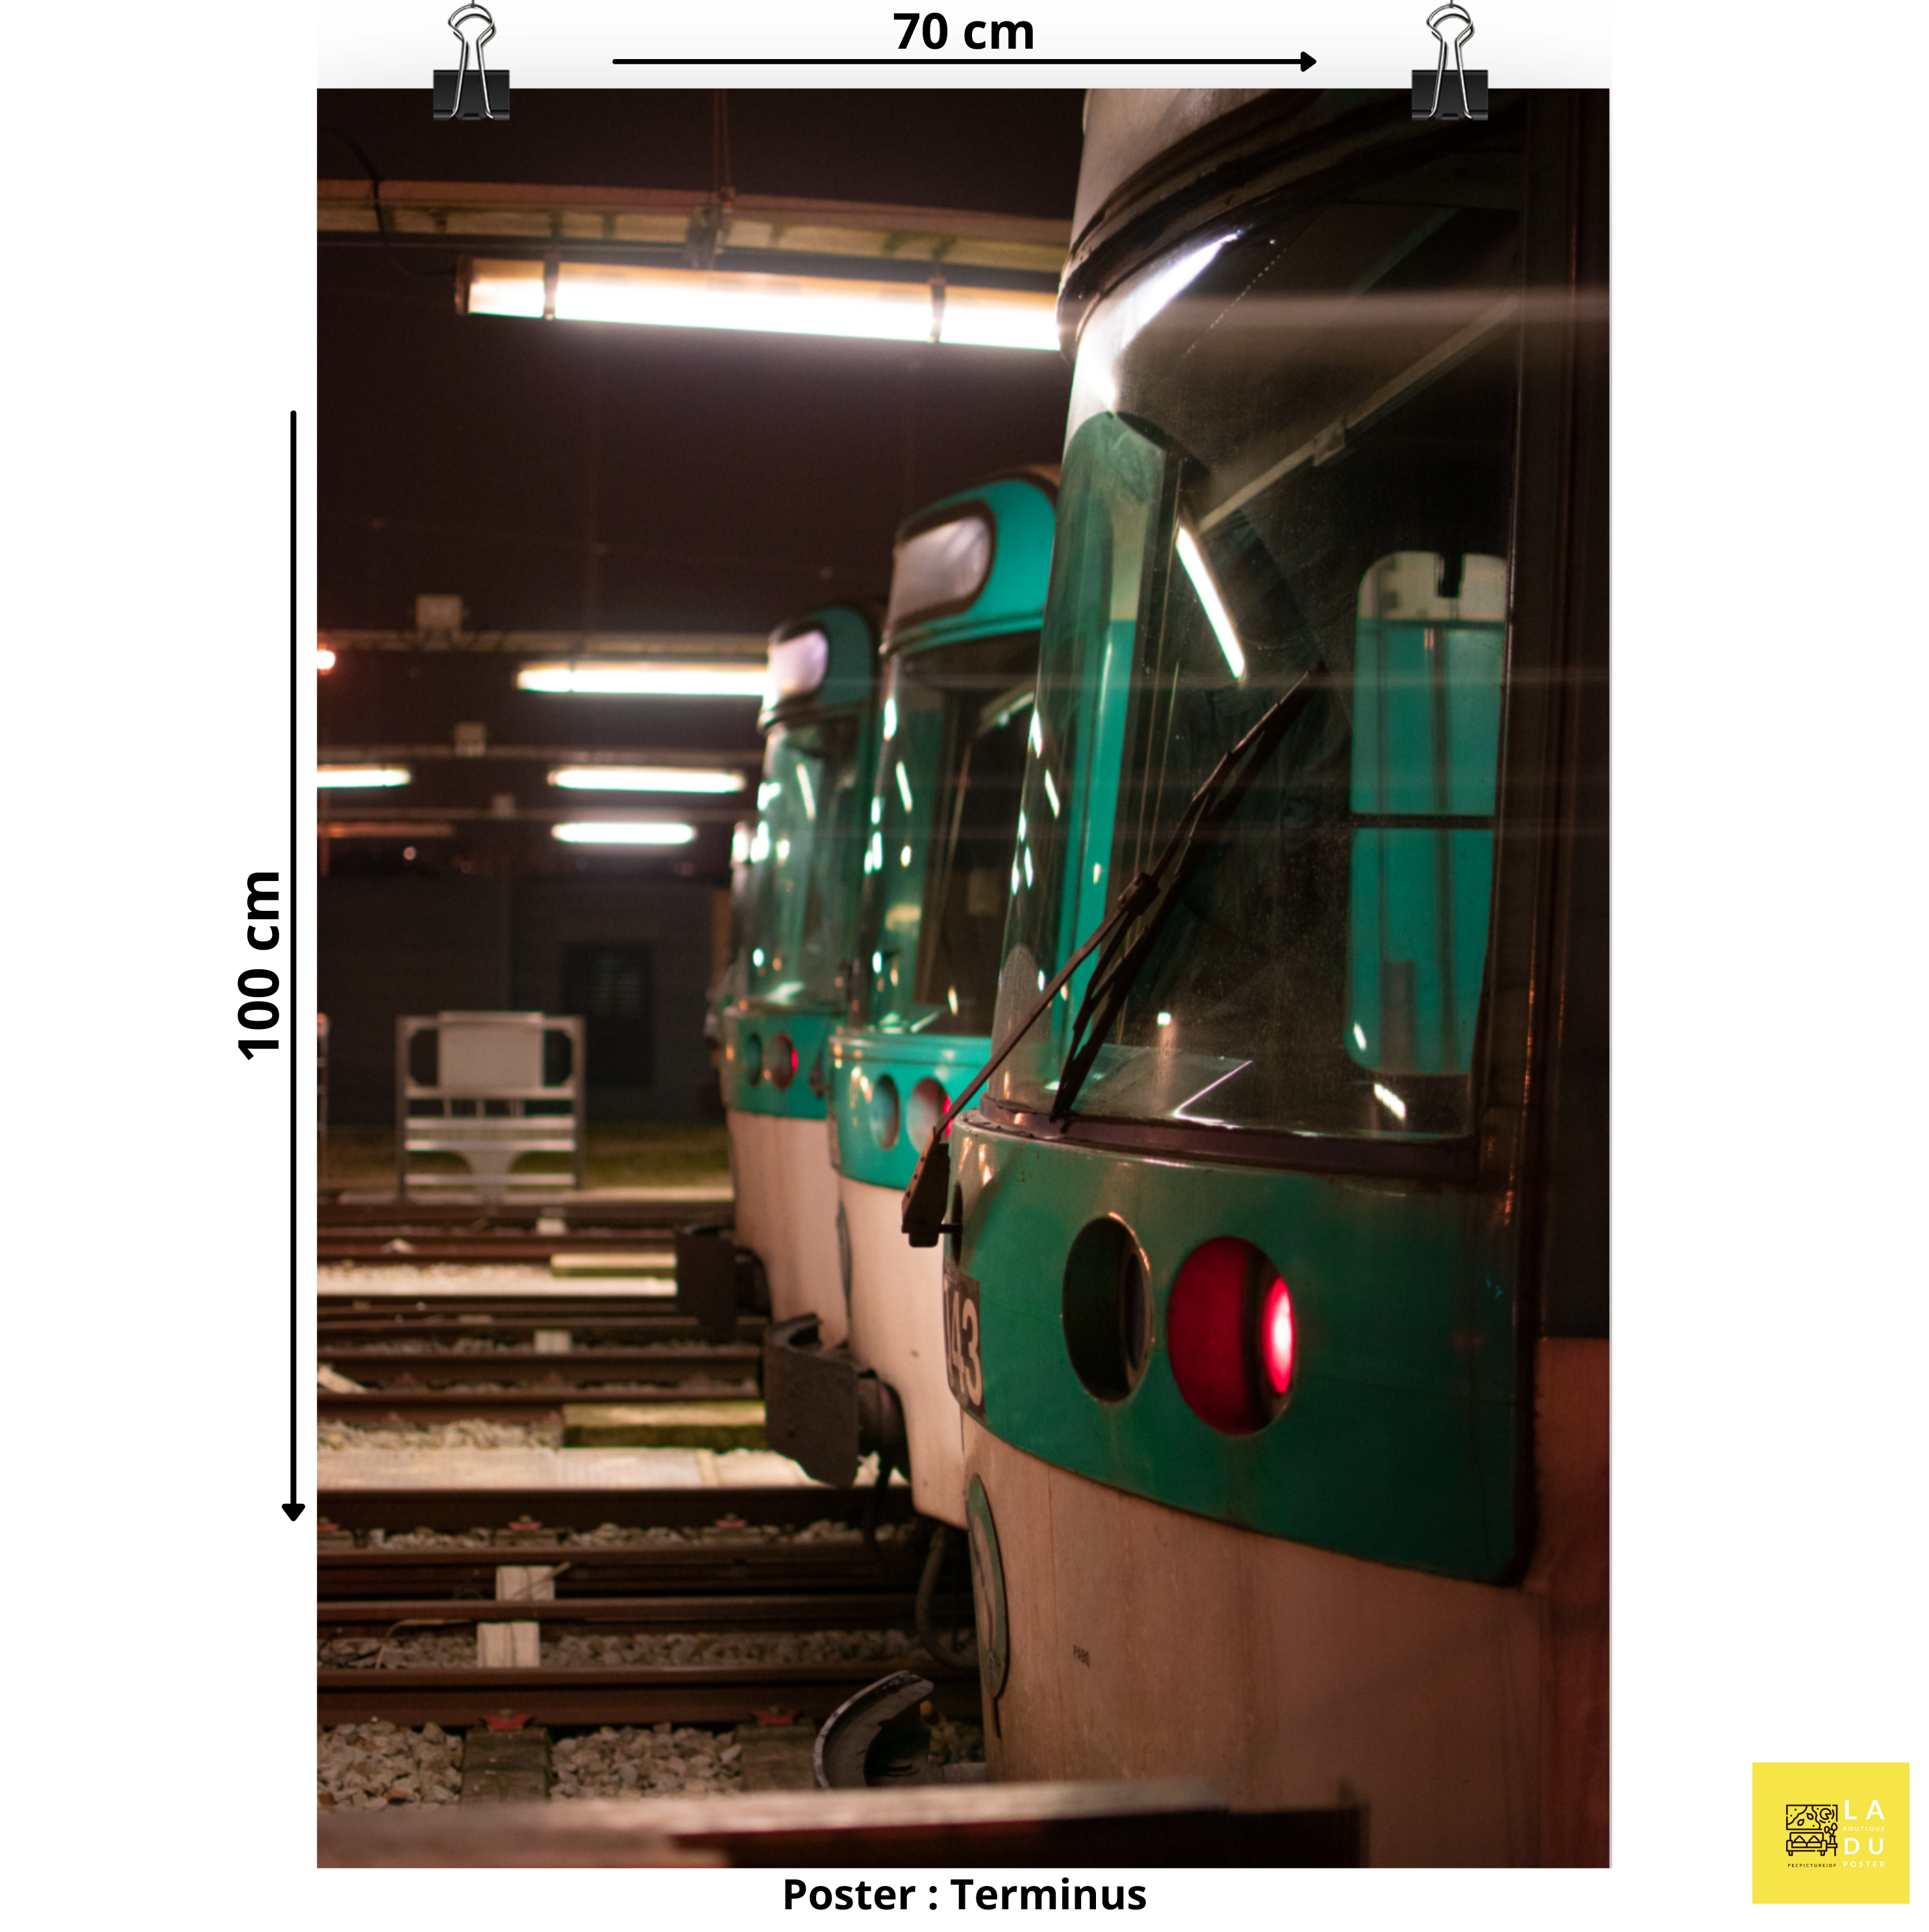 Terminus du métro - Poster - La boutique du poster Français